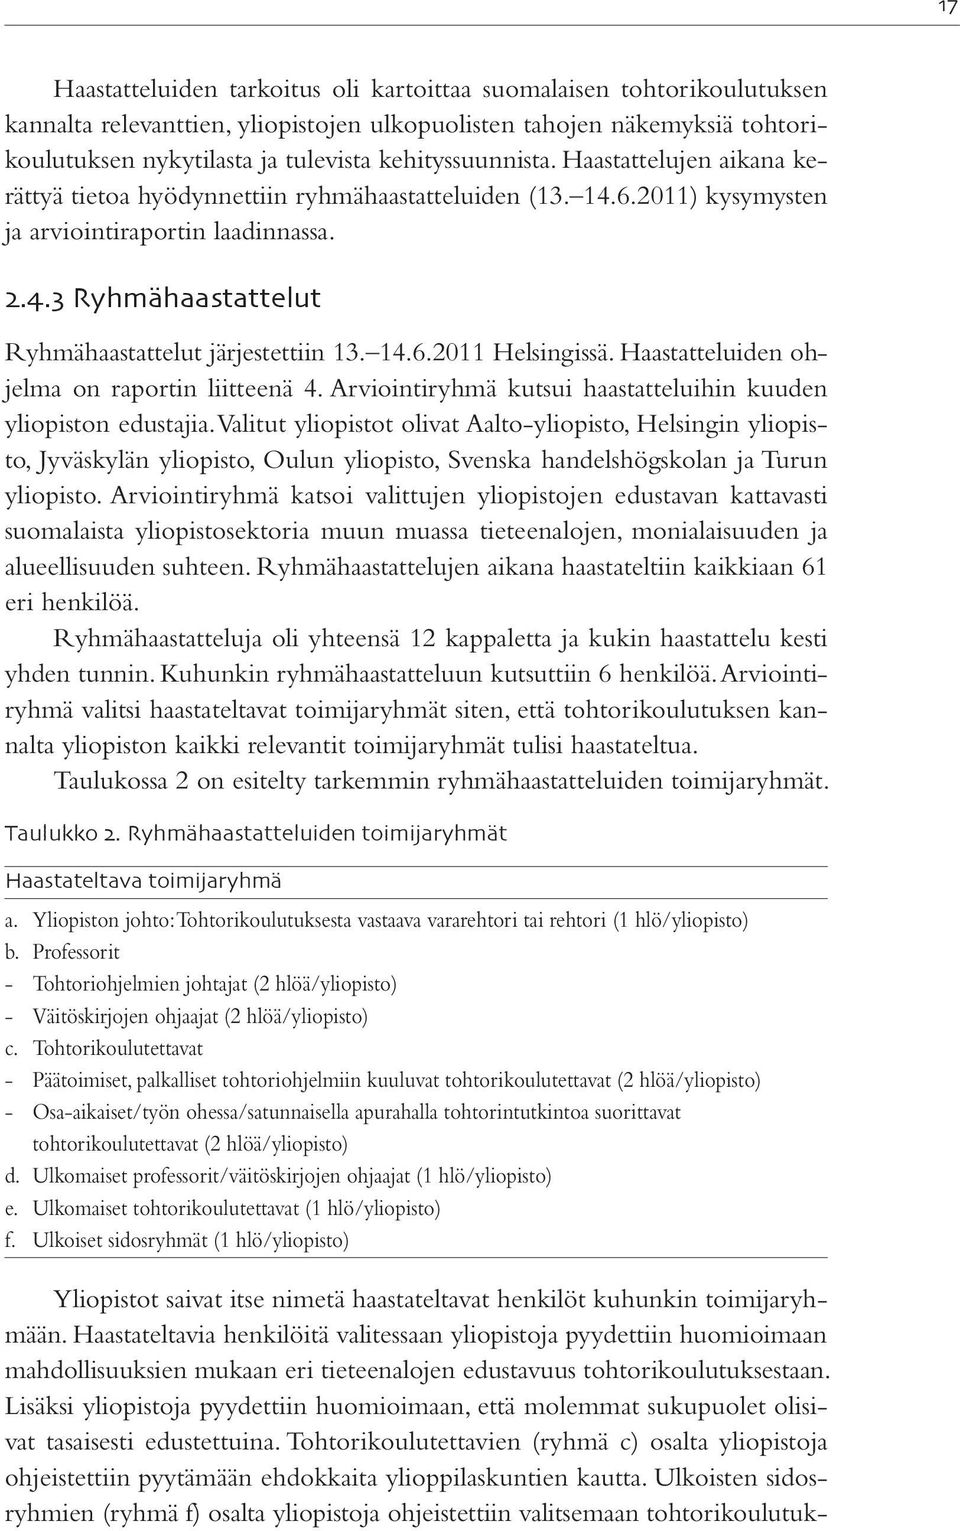 14.6.2011 Helsingissä. Haastatteluiden ohjelma on raportin liitteenä 4. Arviointiryhmä kutsui haastatteluihin kuuden yliopiston edustajia.